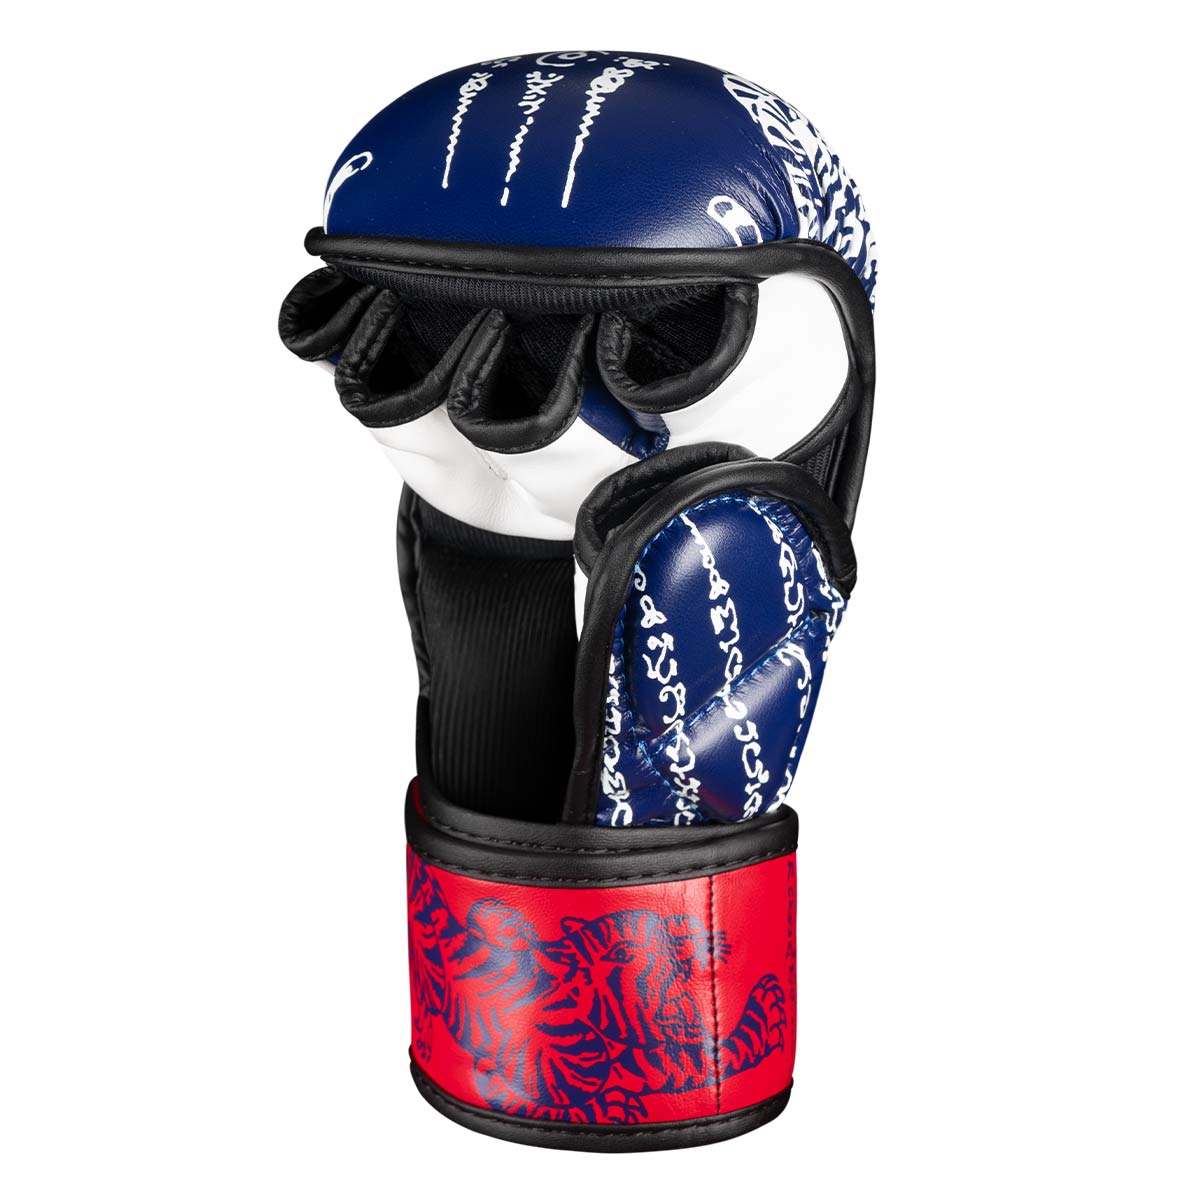 Phantom Muay Thai Handschuhe für Thaiboxen und MMA Sparring, Wettkampf und Training. Im traditionellen Sak Yant Design und der Farbe Blau/Rot.